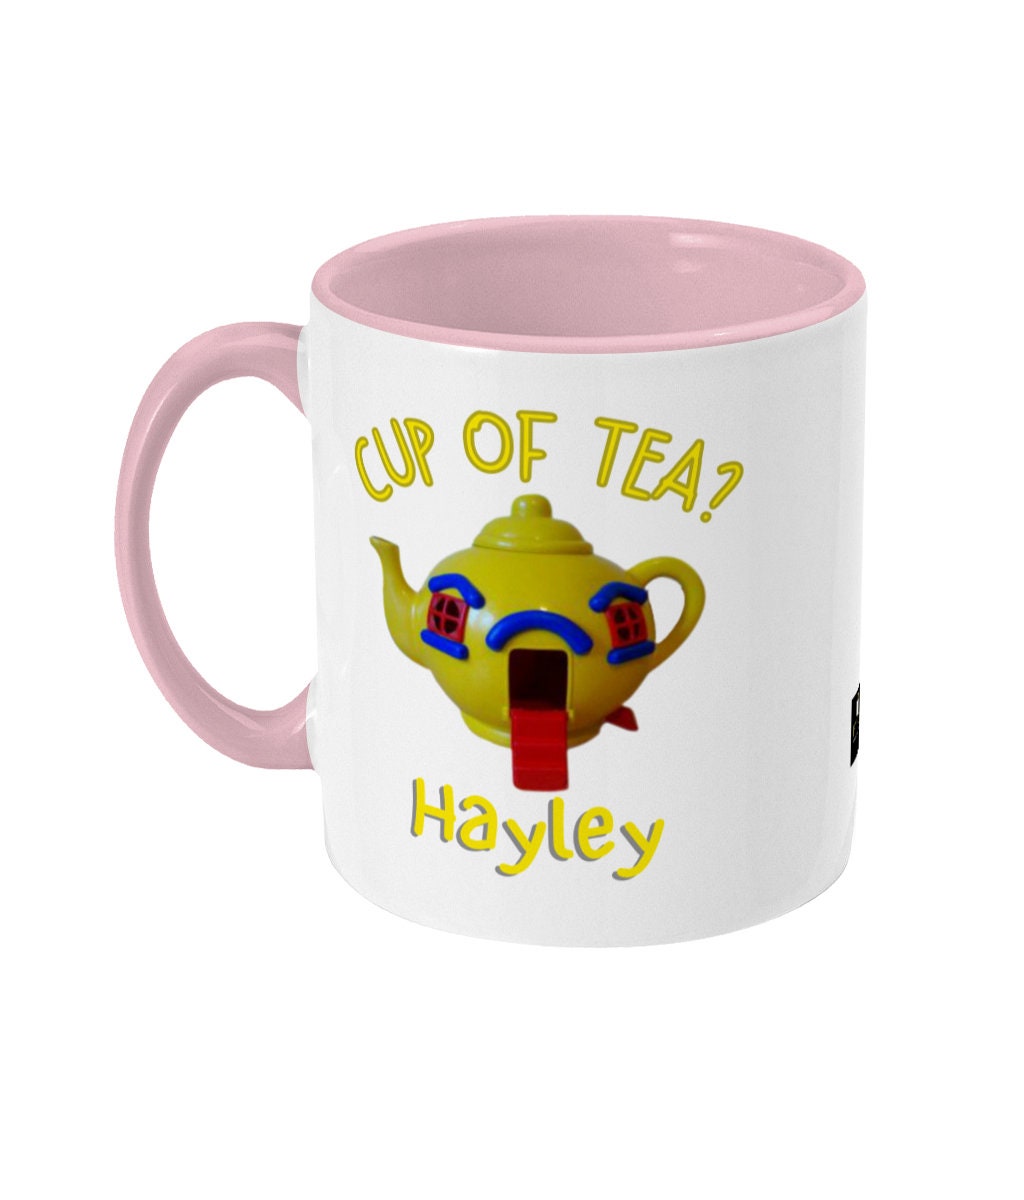 Big yellow teapot novelty coffee mug 80's memorabilia gift